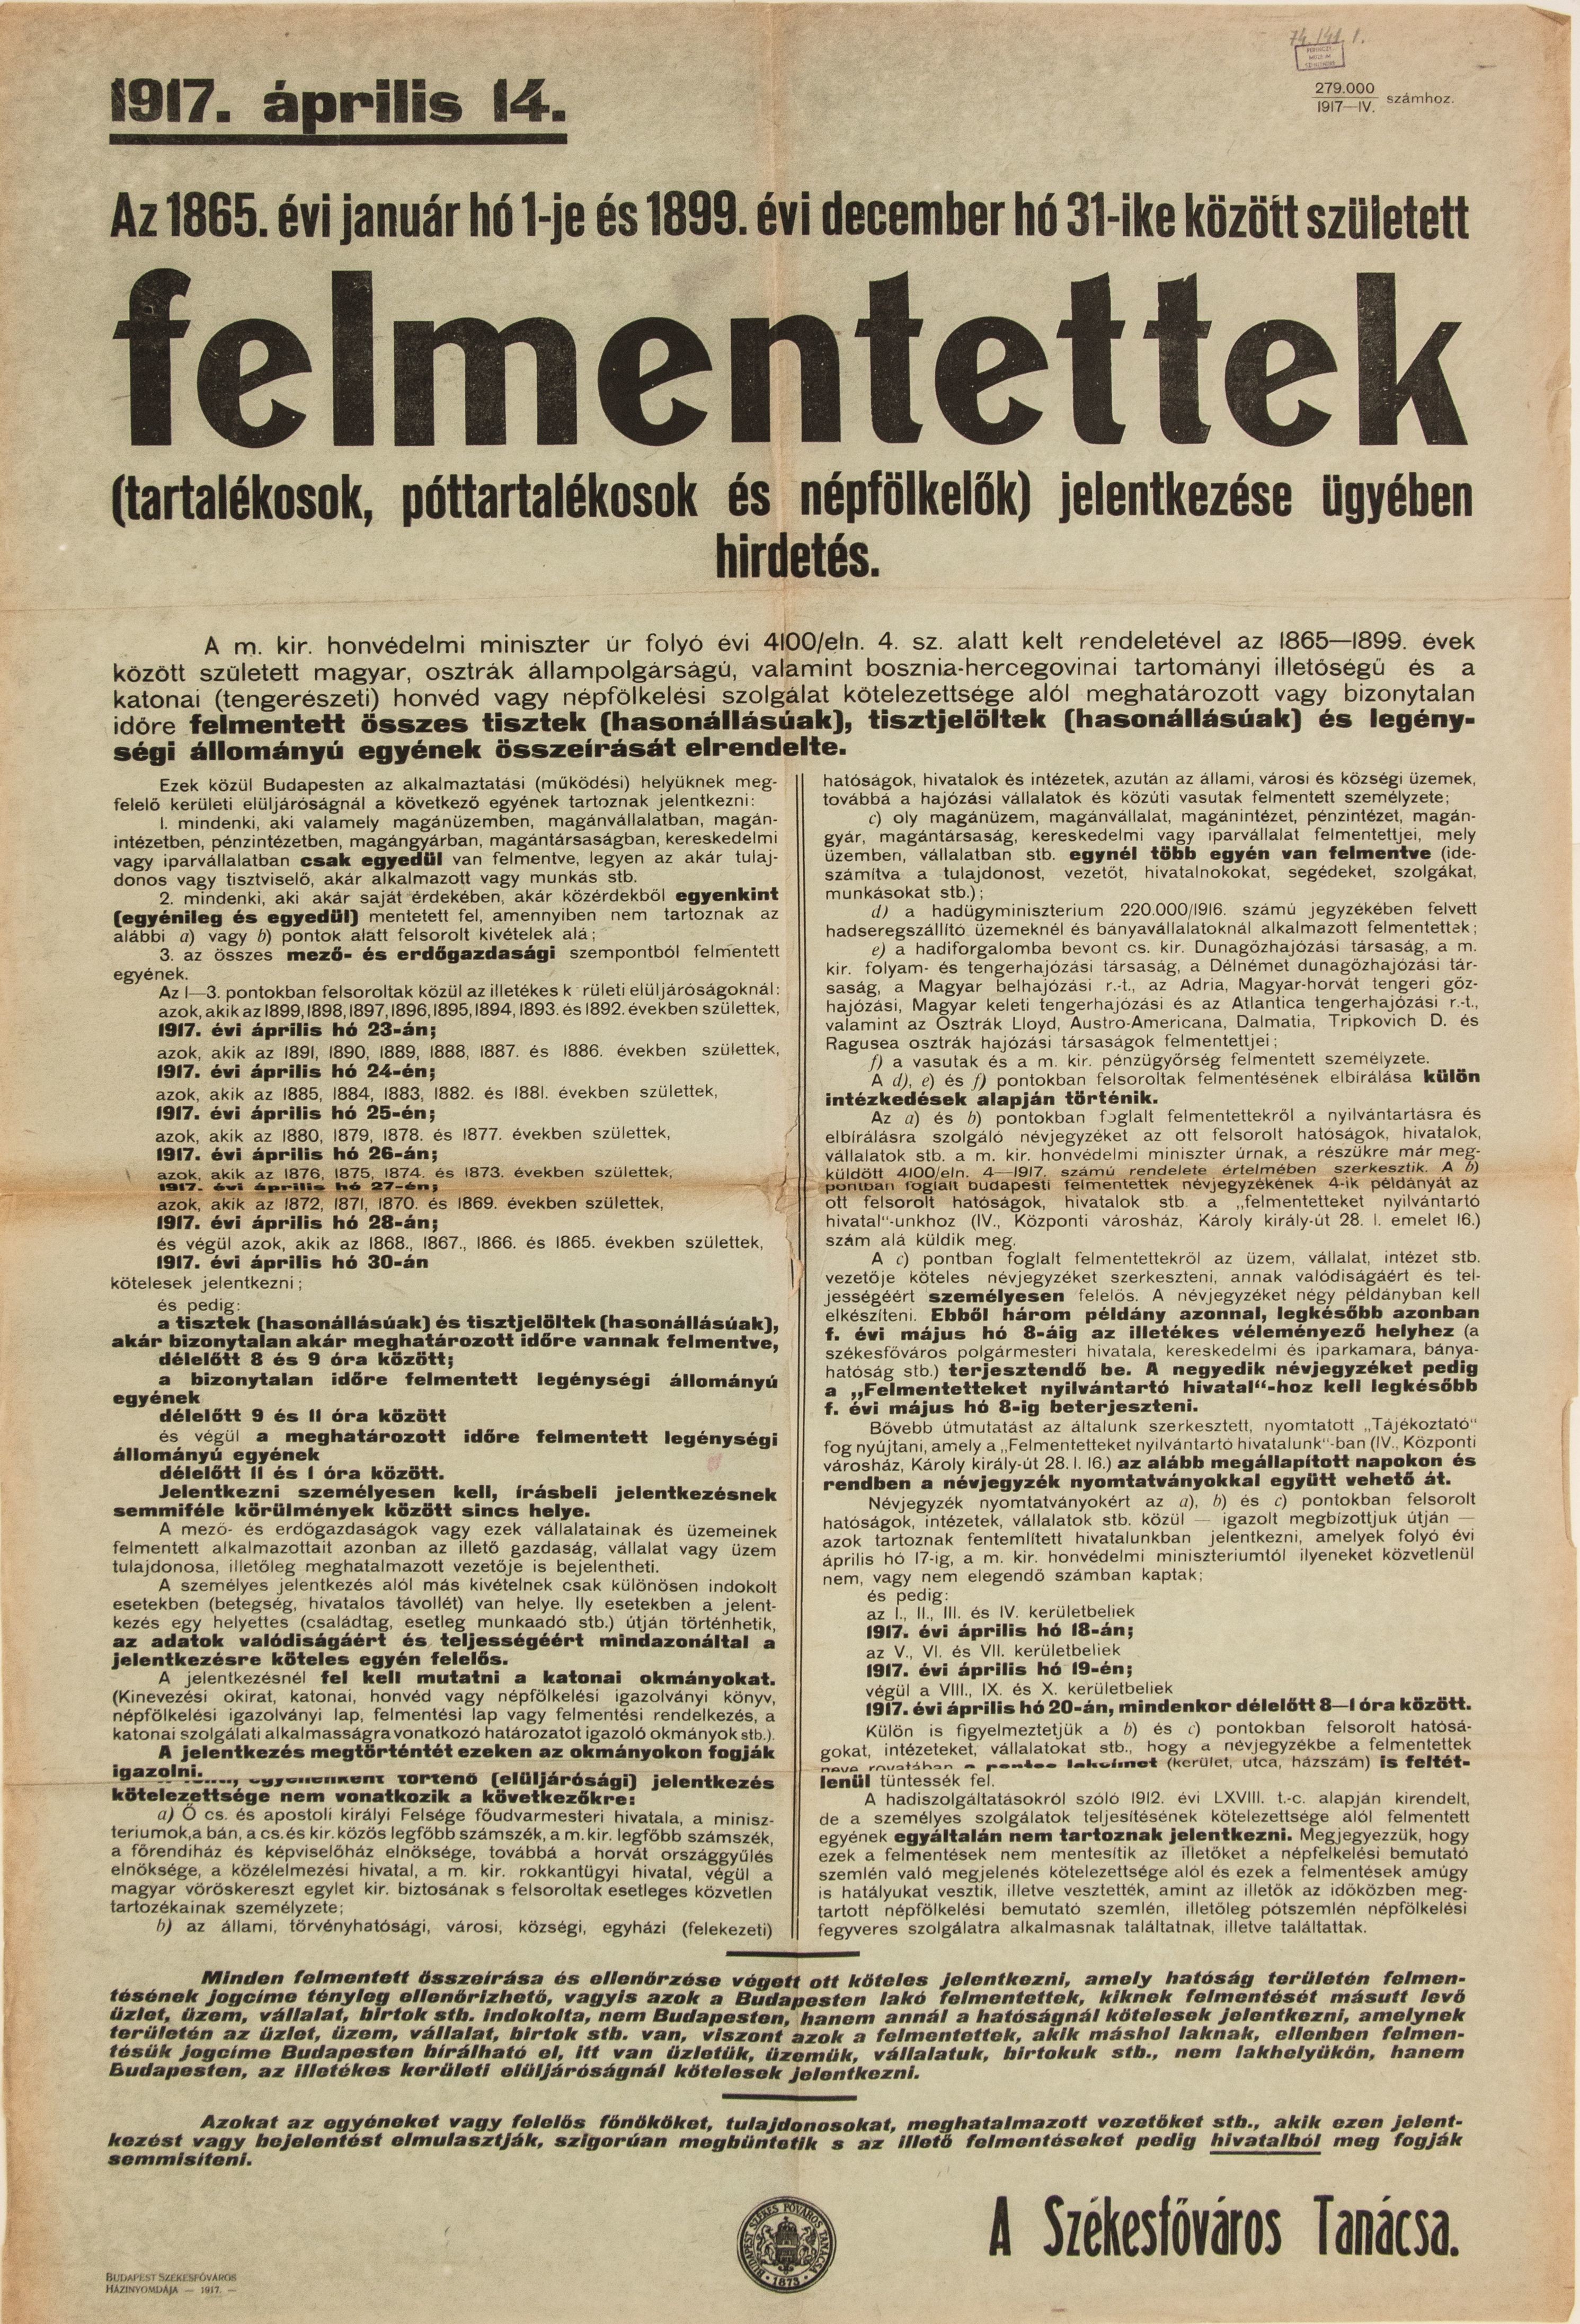 Katonai szolgálat alól felmentettek jelentkezése ügyében hirdetés, 1917.04.14. (kékes alap, fekete betű) (Ferenczy Múzeumi Centrum CC BY-NC-SA)